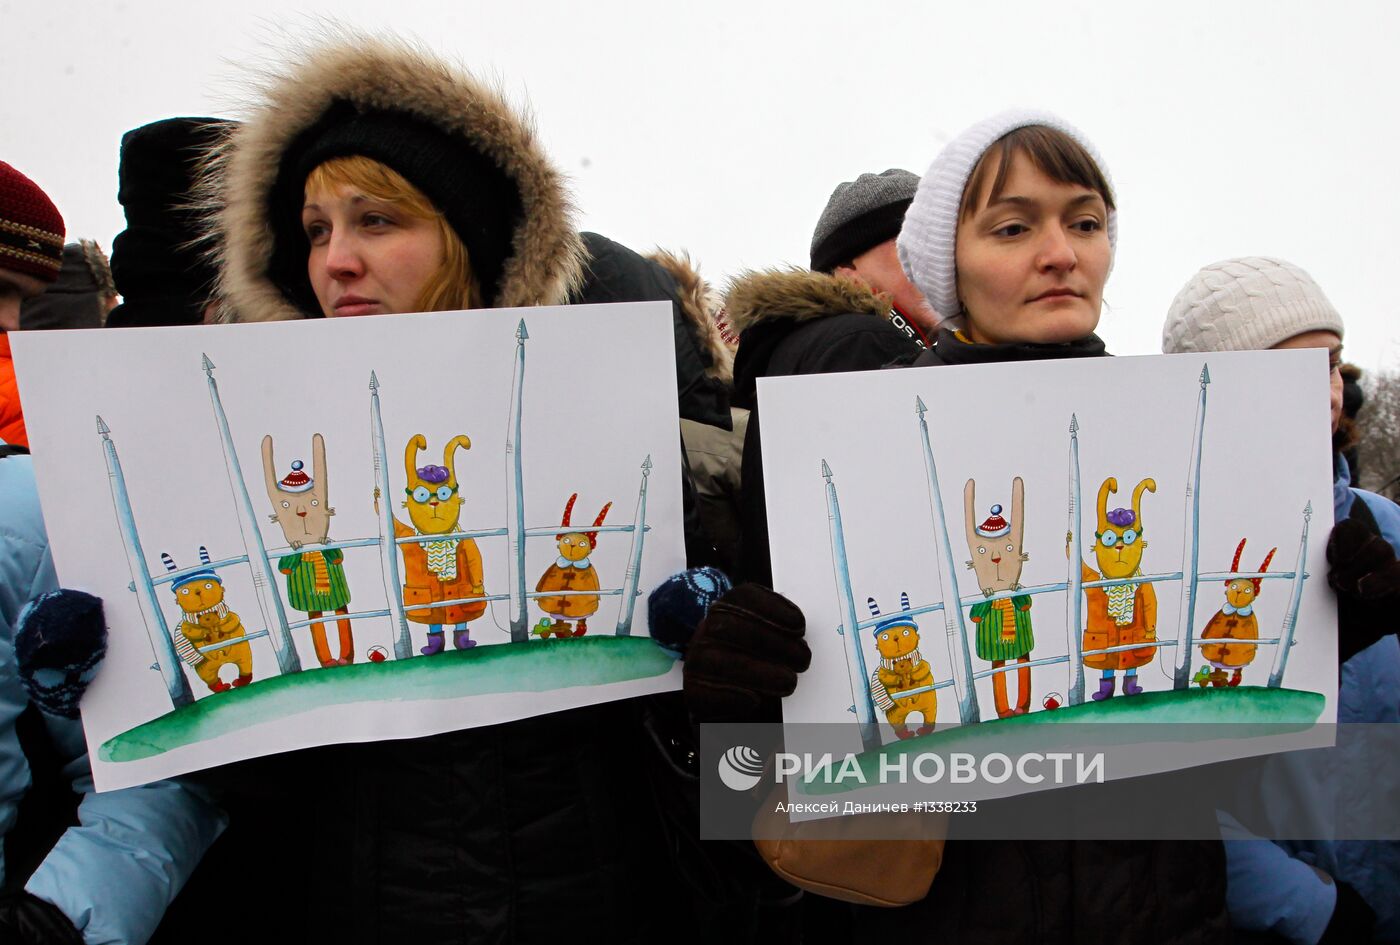 Марш оппозиции против "антимагнитского закона" в С.-Петербурге